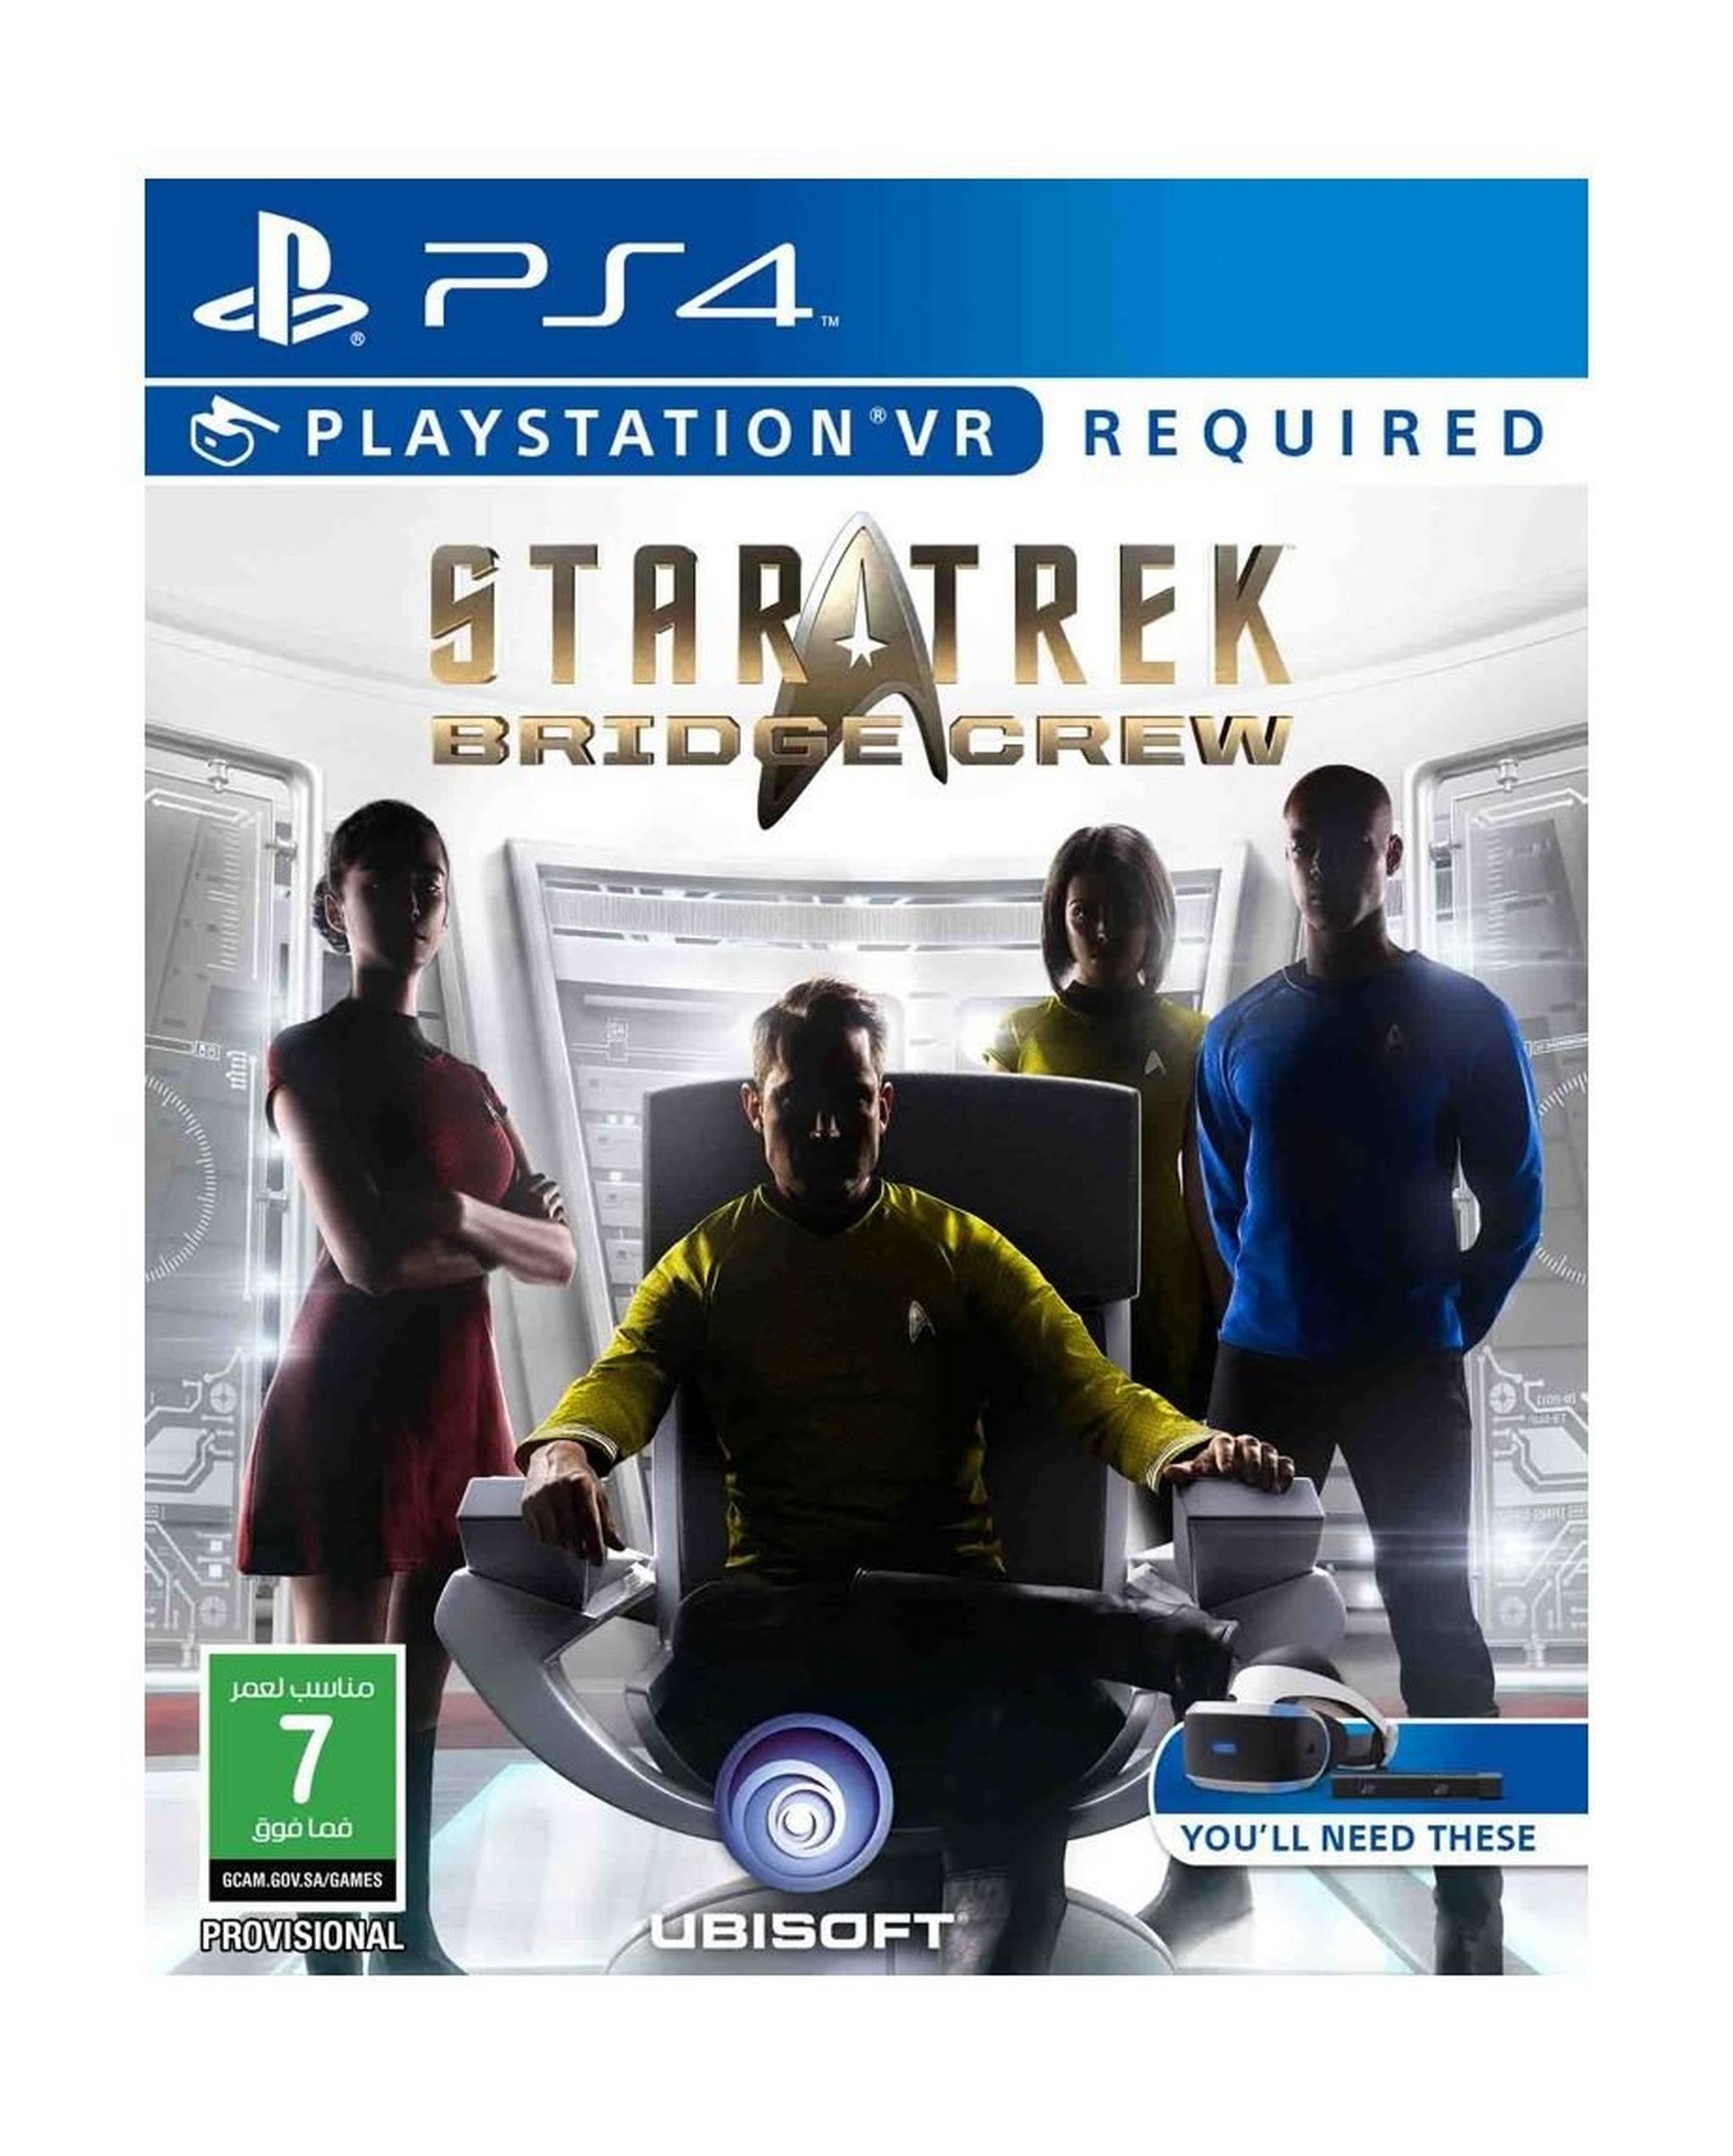 Star Trek VR - PS4 Game